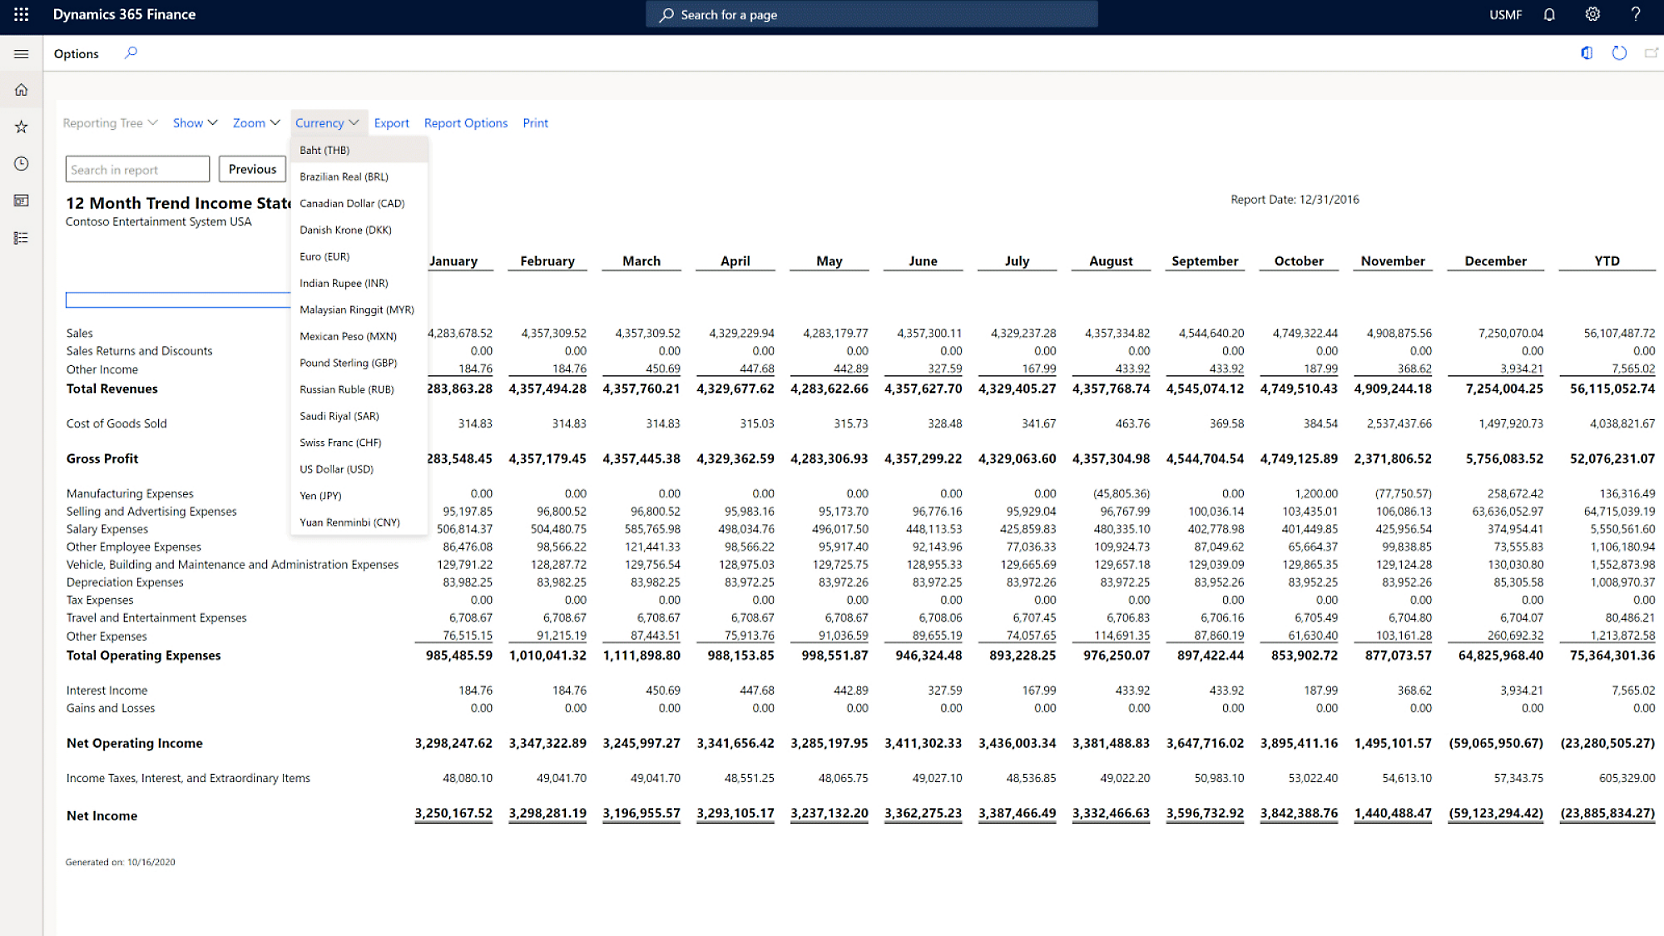 Microsoft Power BI'daki bir finansal panonun ekran görüntüsü.